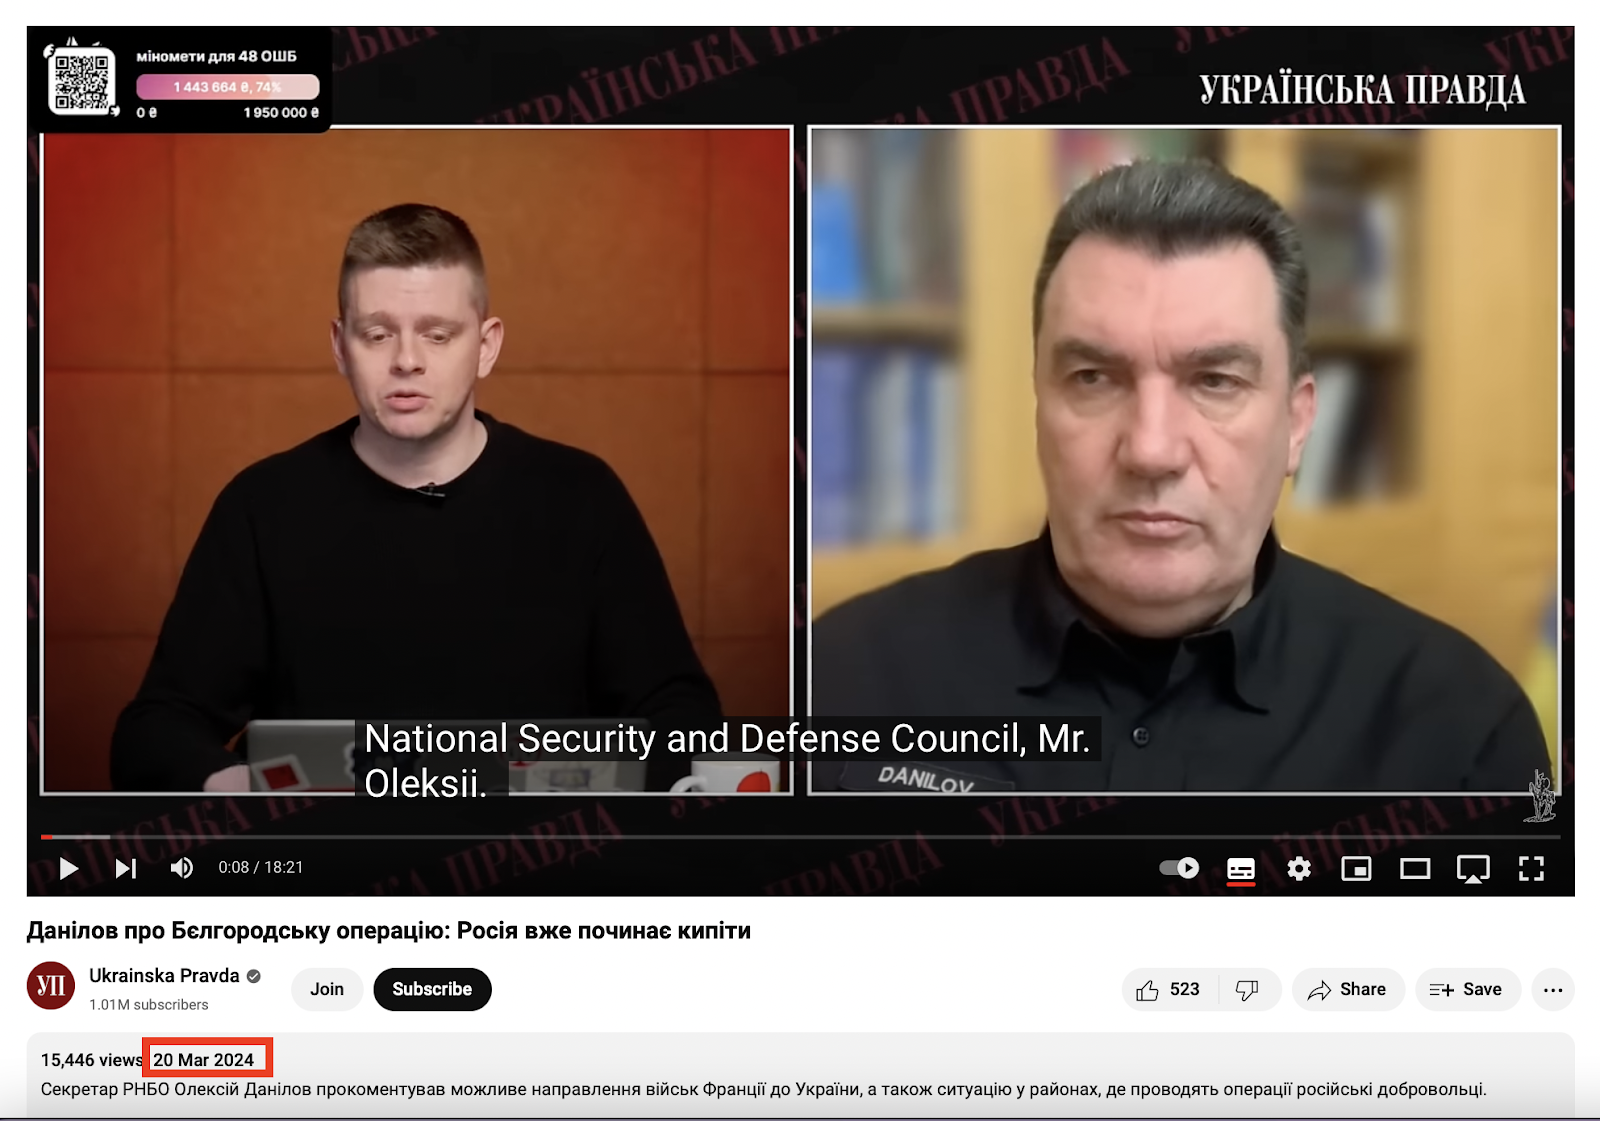 مقابلة أمين مجلس الأمن القومي والدفاع الأوكراني أوليكسي دانيلوف مع صحيفة أوكراينسكا برافدا 